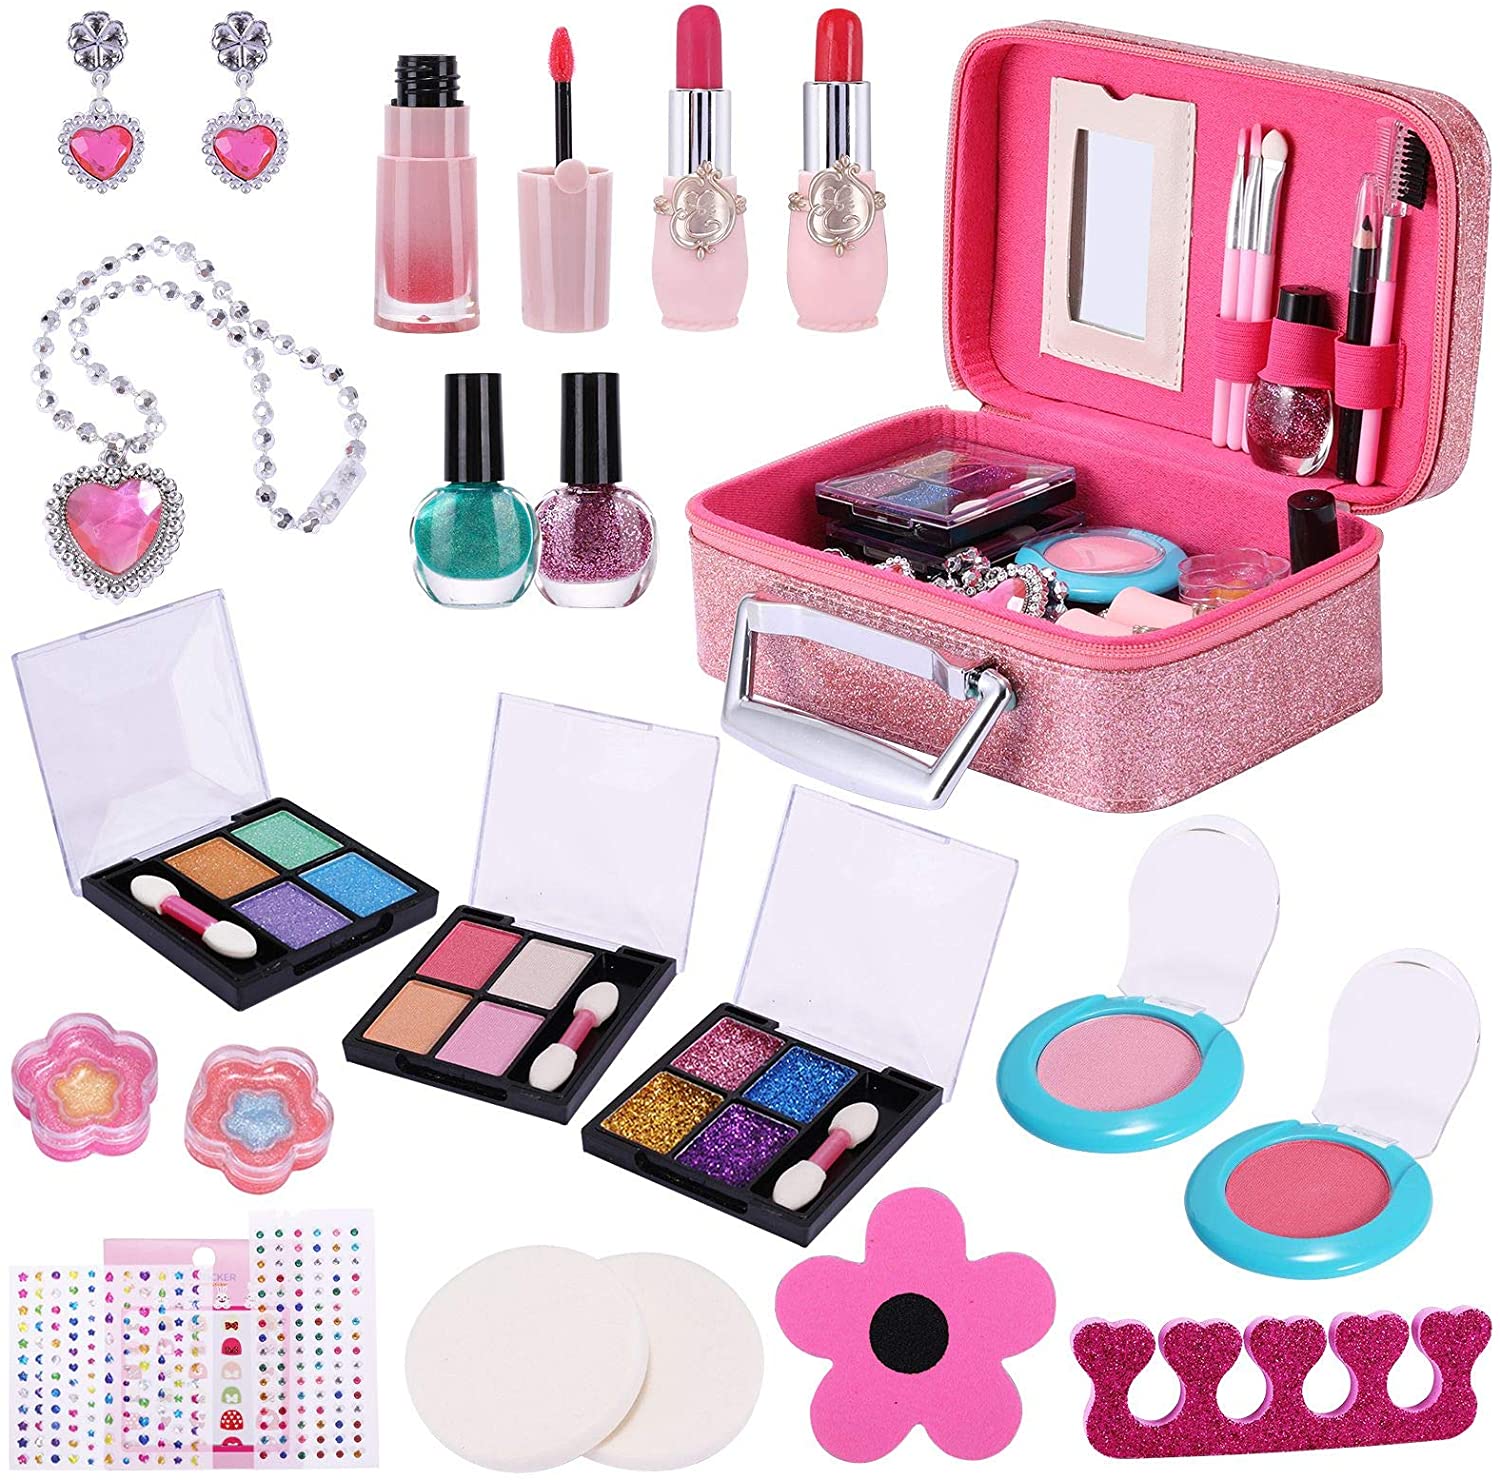 Kids Makeup Kit for Girls, 29pcs Real ...